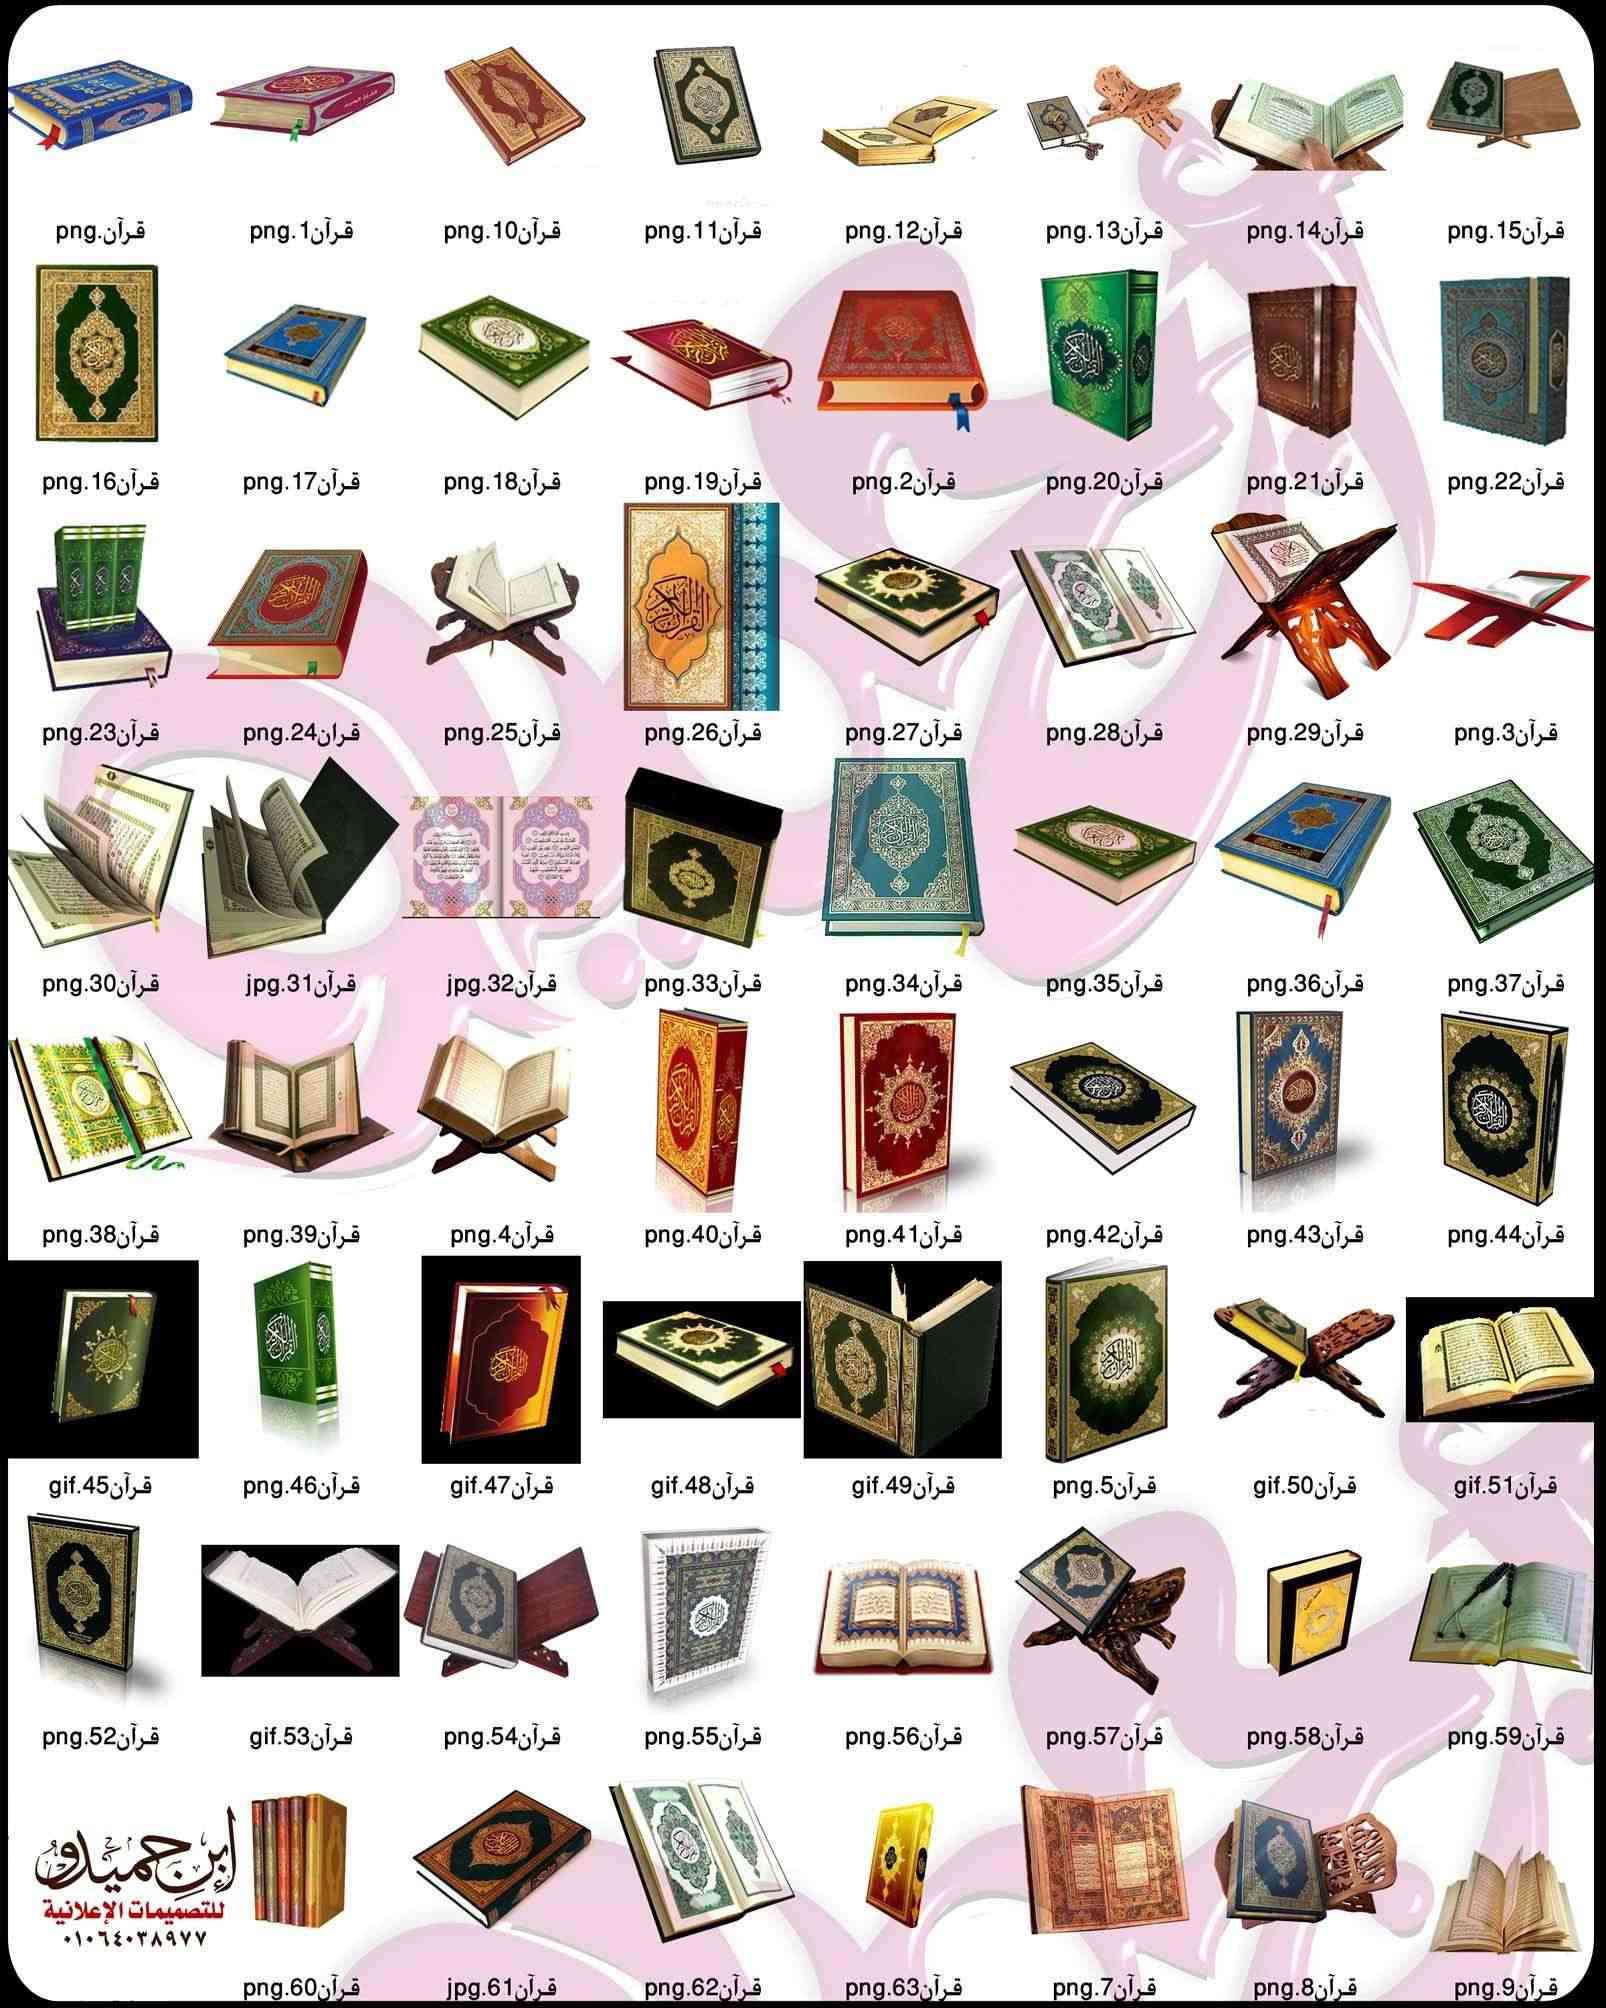 مجموعة مصاحف مقصوصة للتصميم بصيغة png - ابن حميدو لتصميمات الفوتوشوب Quran11